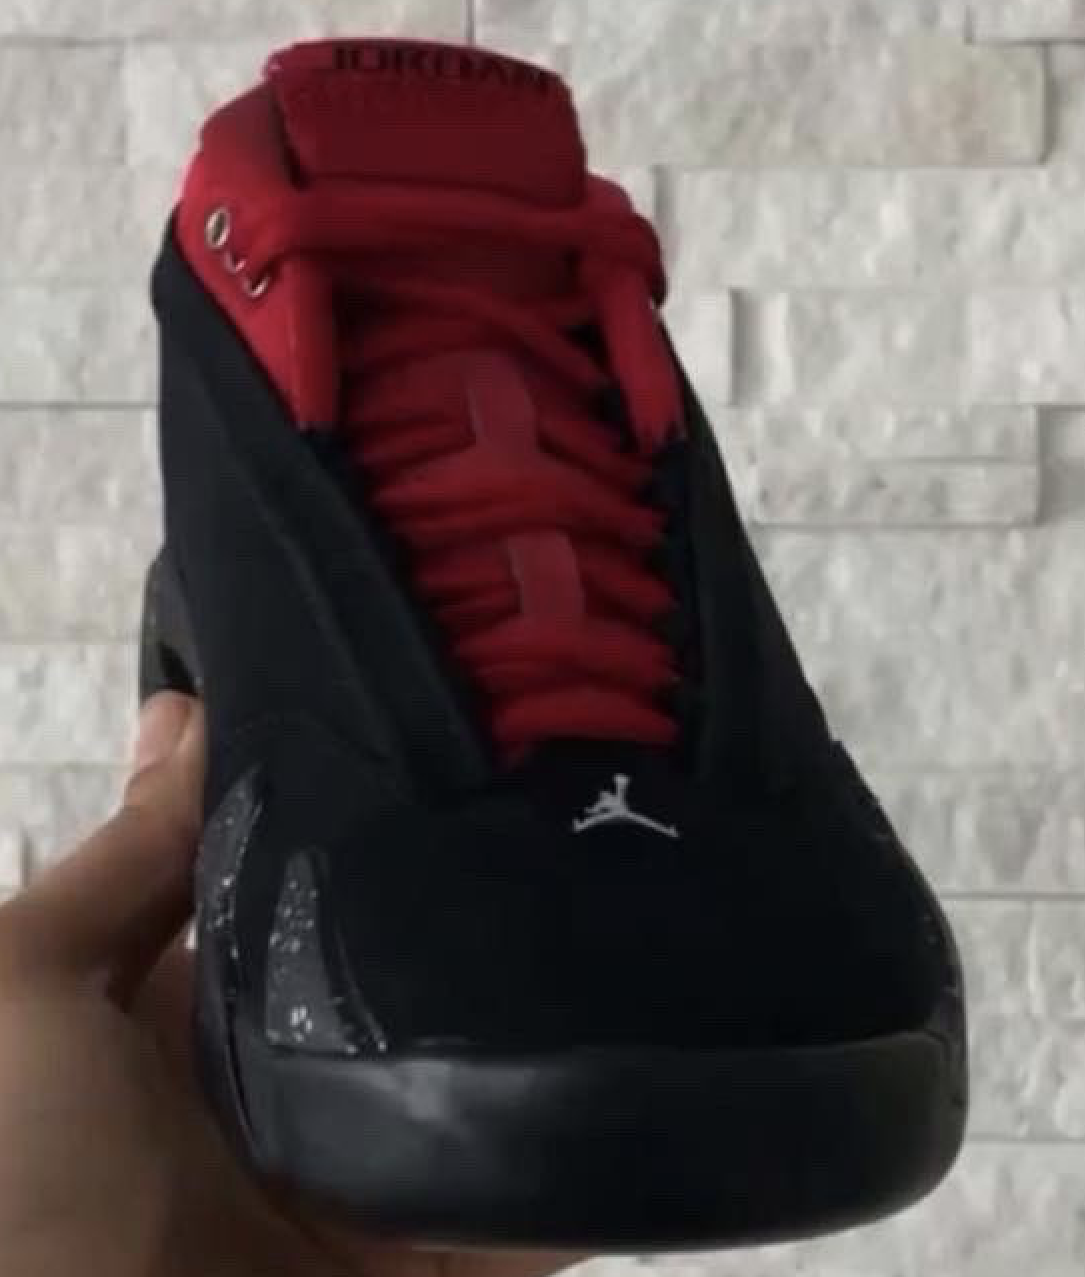 Jordan Brand, Jordan 14 Low, Jordan 14, Jordan, Bred, Black, Air Jordan 14 Low “Bred”, Air Jordan 1, Air Jordan